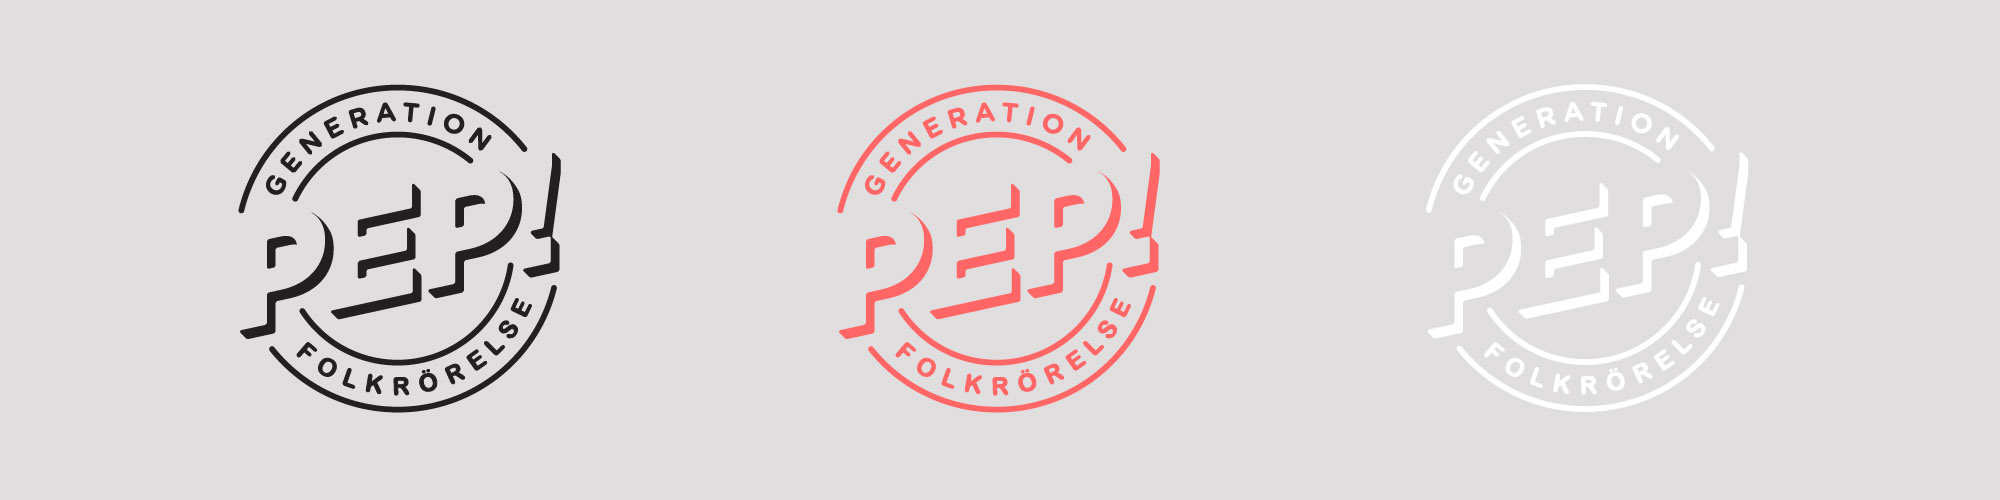 Generation Peps folkrörelse